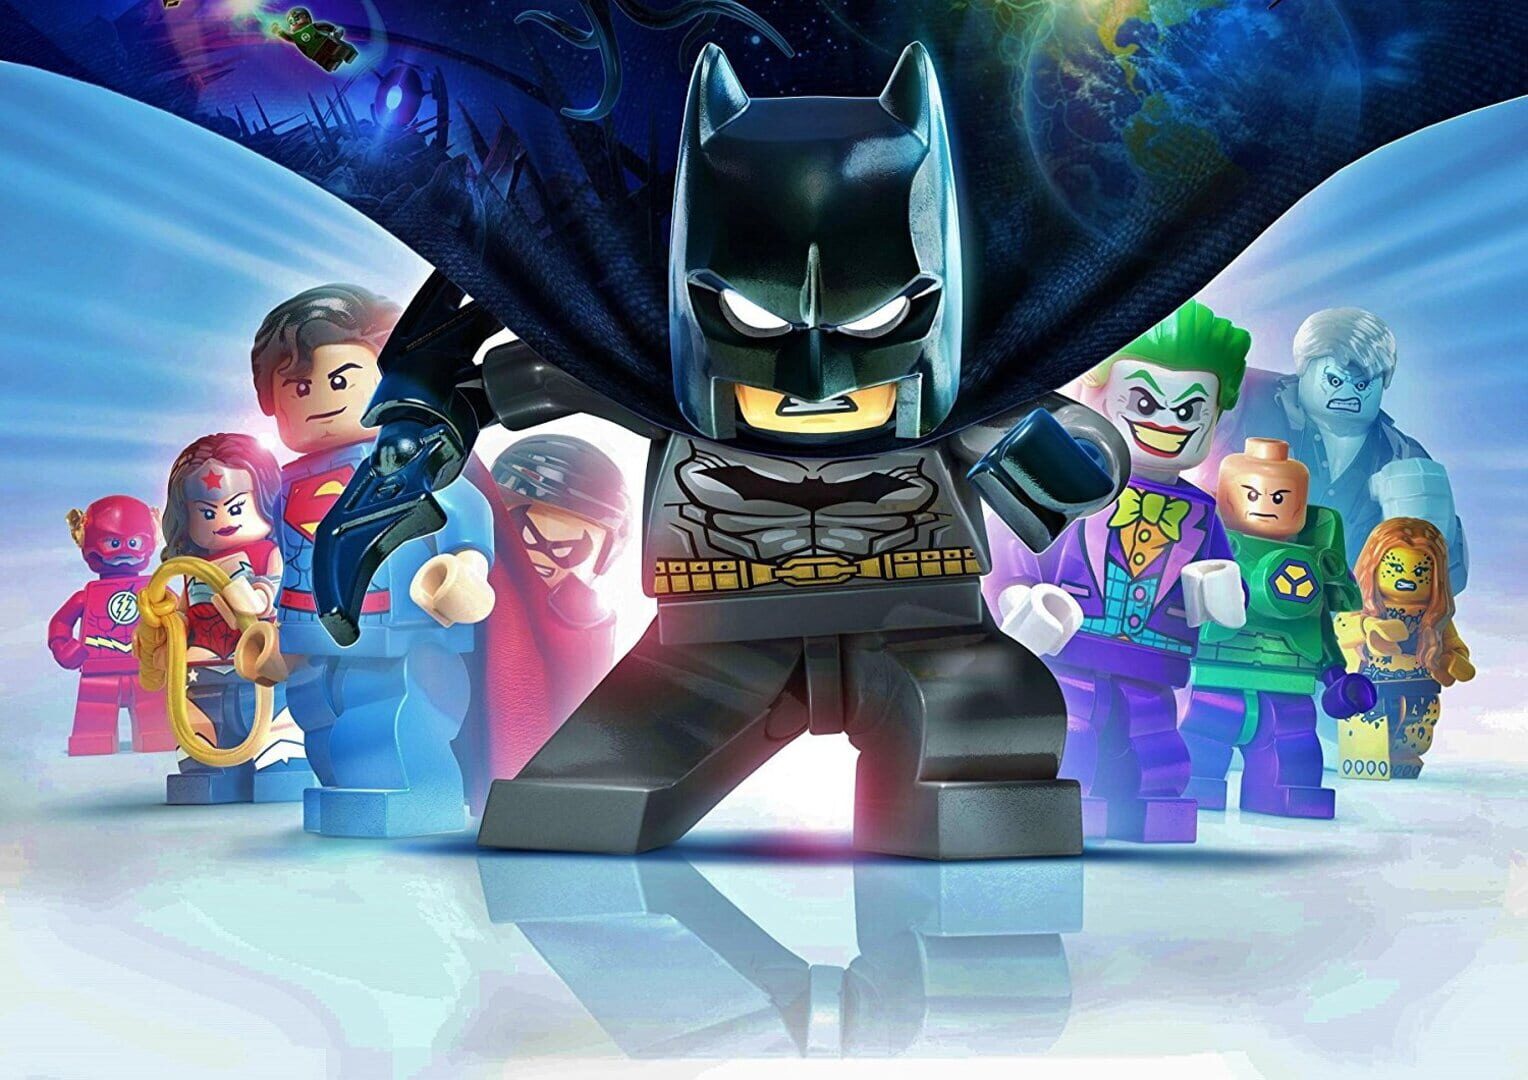 Arte - LEGO Batman 3: Beyond Gotham